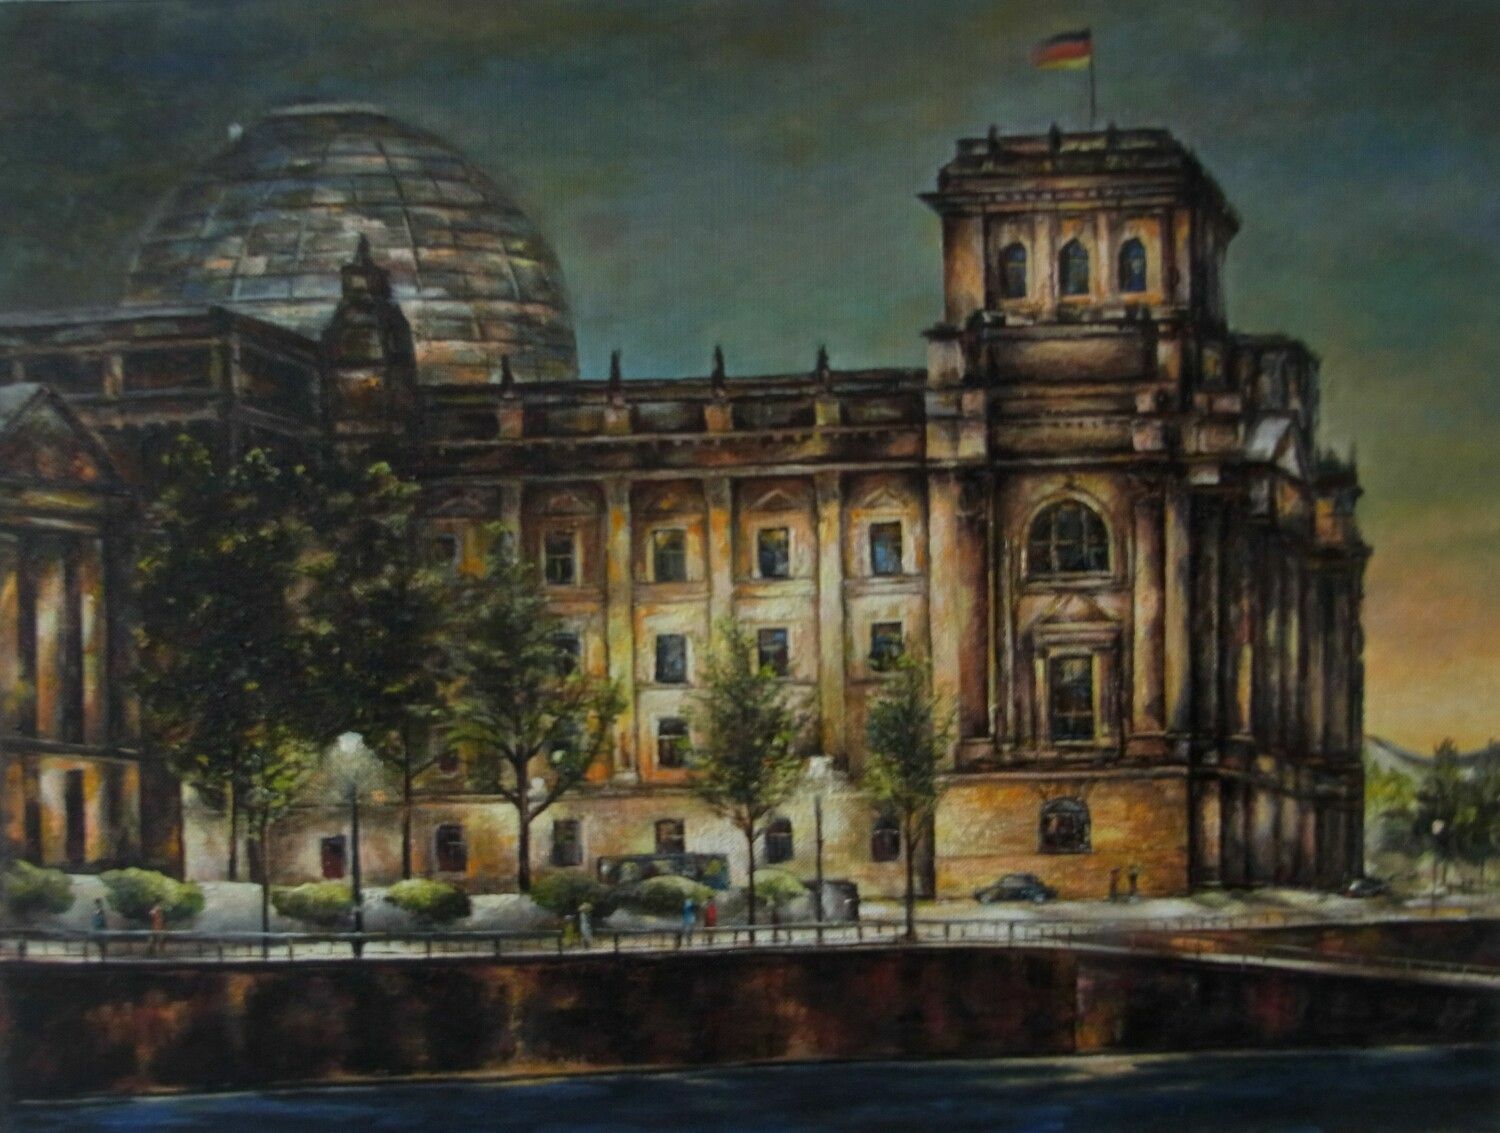 Das Ölbild "Blick auf den Rechstag" zeigt den Reichstag von der Spree aus, es herrscht Dämmerung und die Laternen entlang des Uferwegs setzen Lichtakzente